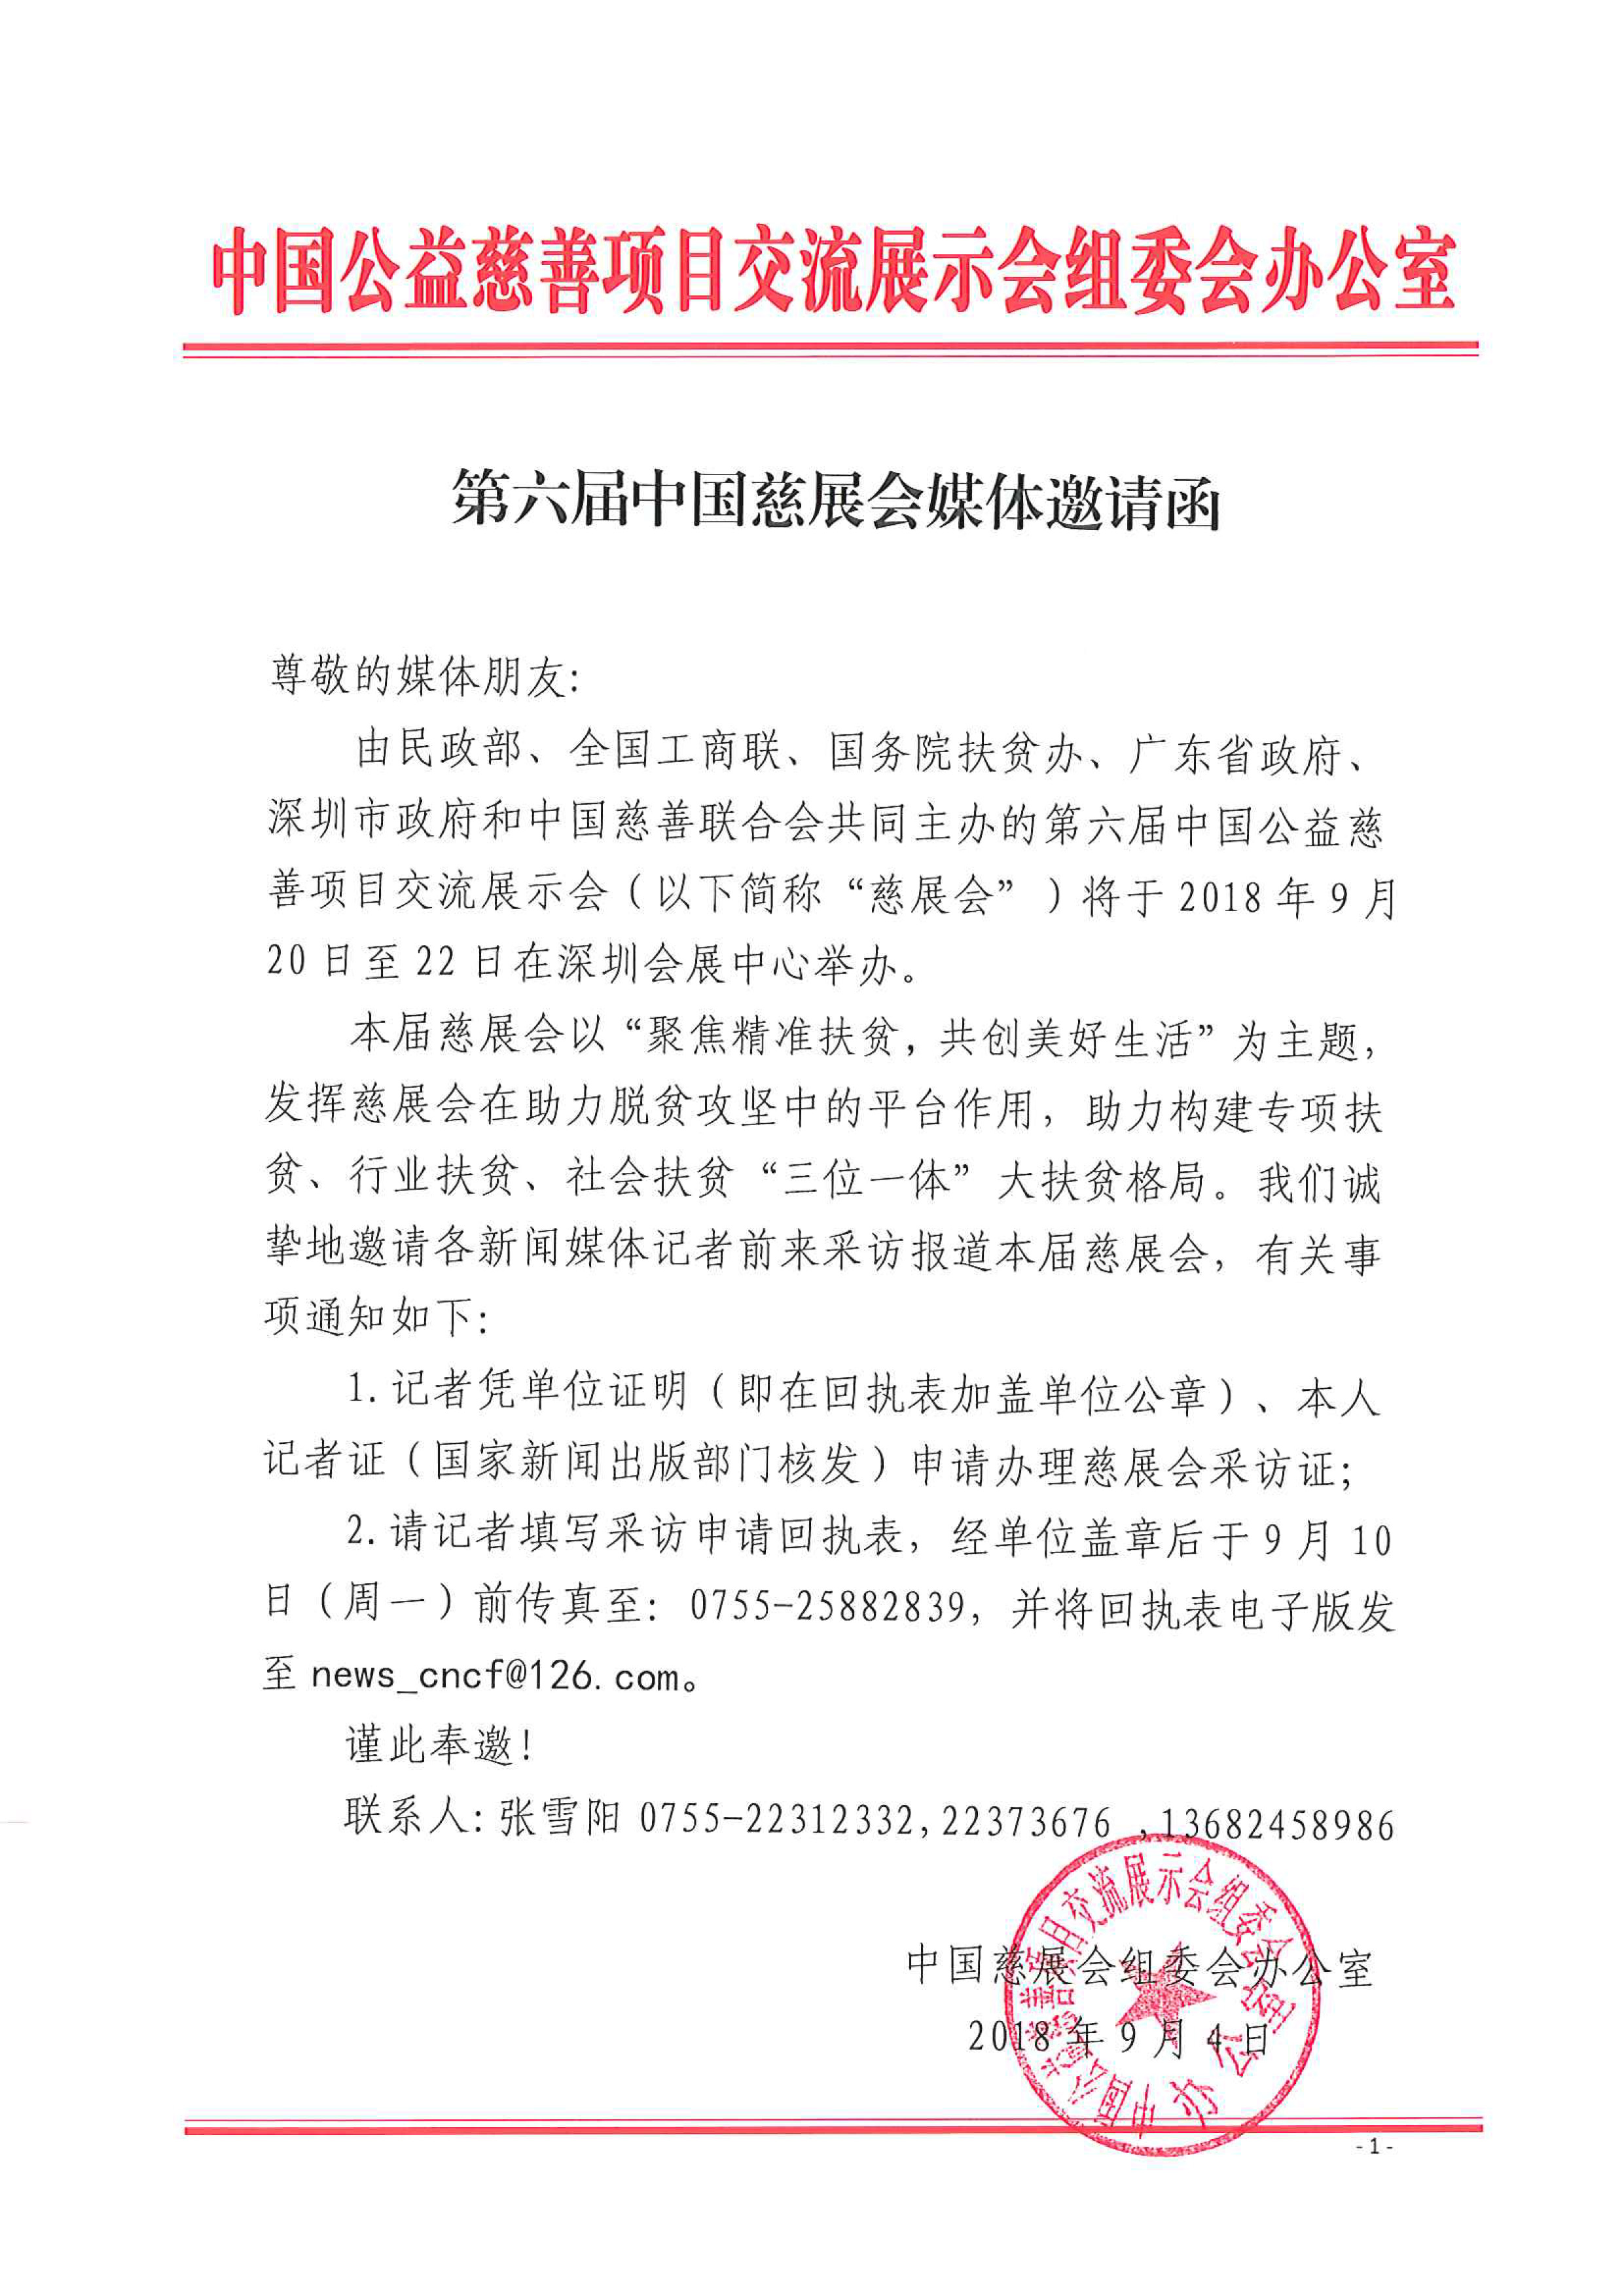 第六届中国慈展会媒体邀请函-1.jpg